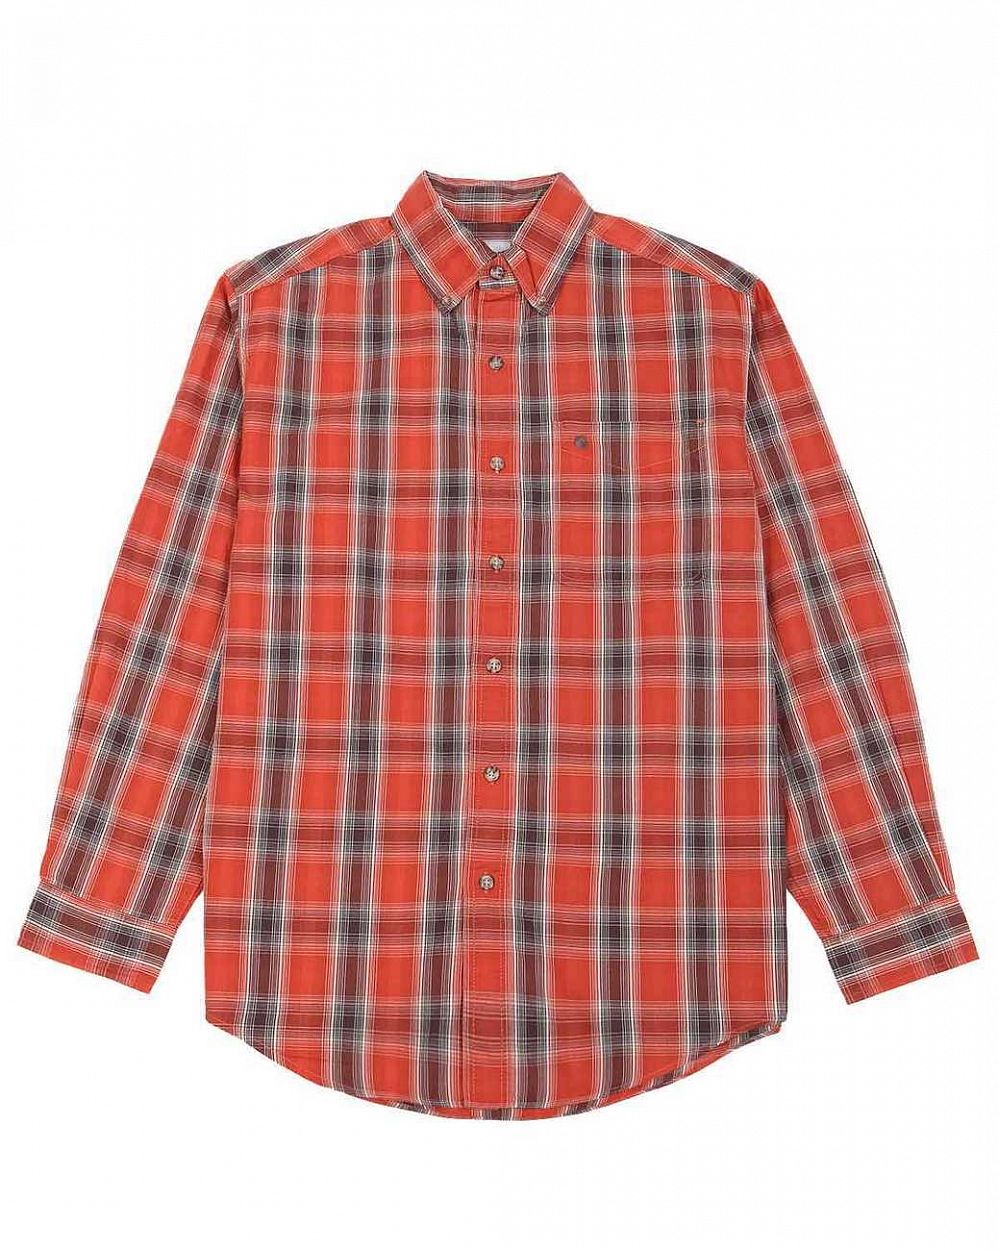 Рубашка мужская с длинным рукавом Publish 252 Red Check отзывы